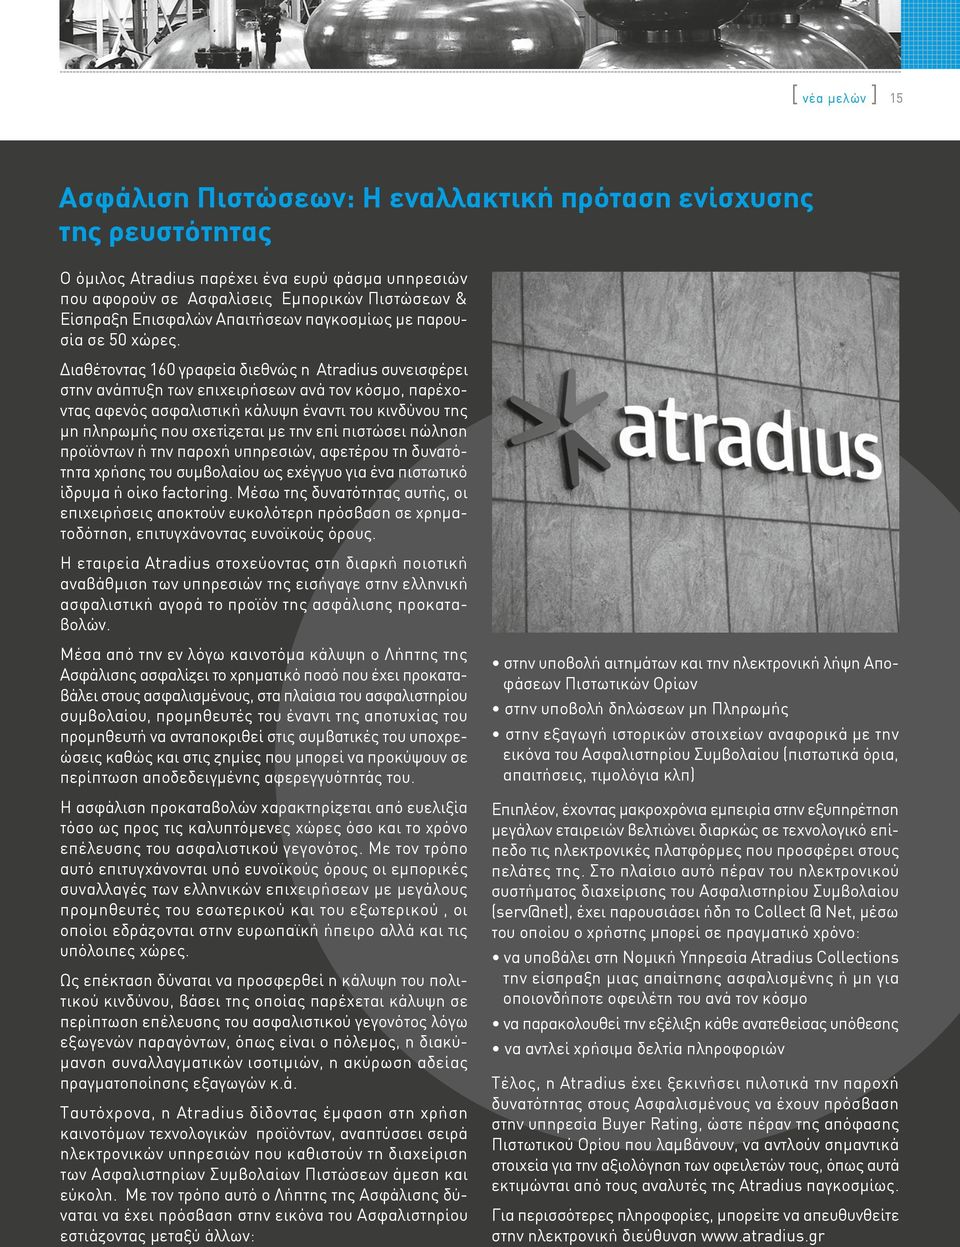 Διαθέτοντας 160 γραφεία διεθνώς η Atradius συνεισφέρει στην ανάπτυξη των επιχειρήσεων ανά τον κόσμο, παρέχοντας αφενός ασφαλιστική κάλυψη έναντι του κινδύνου της μη πληρωμής που σχετίζεται με την επί